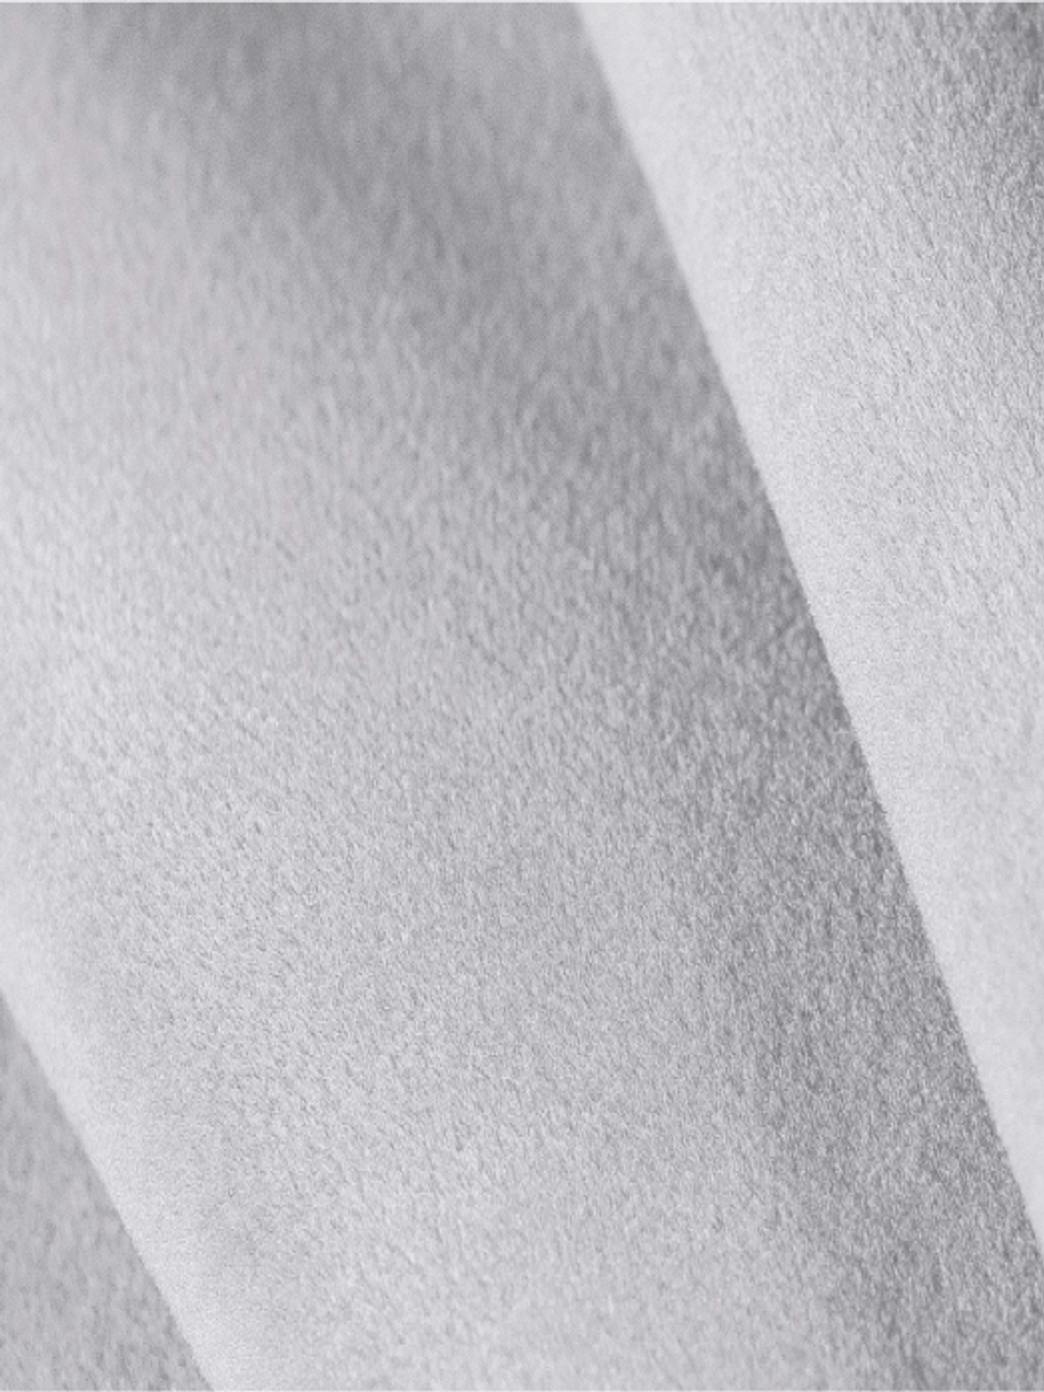 white-sofa-fabric-closeup